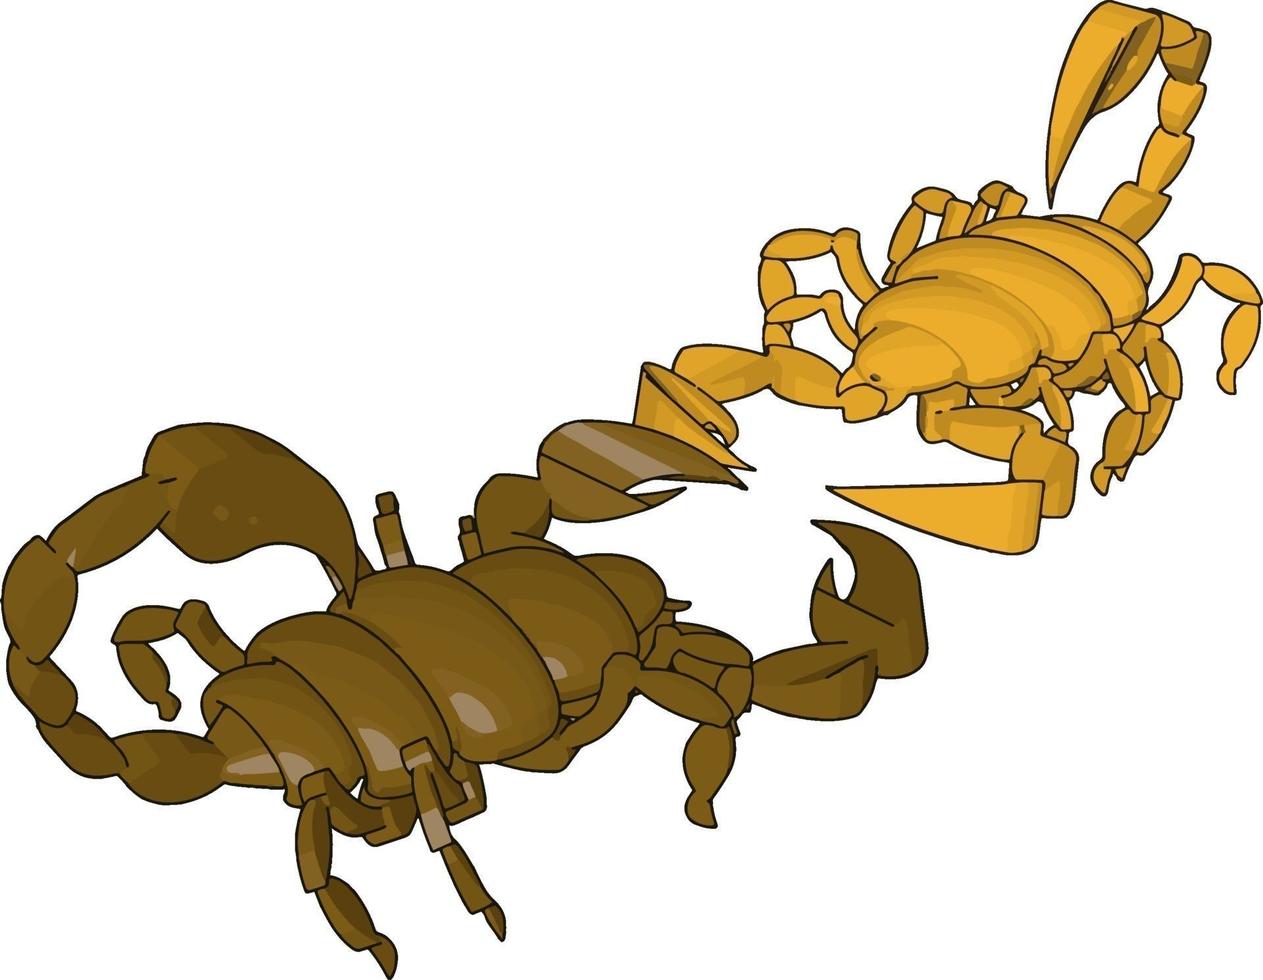 mode d'un scorpion 3d, illustration, vecteur sur fond blanc.